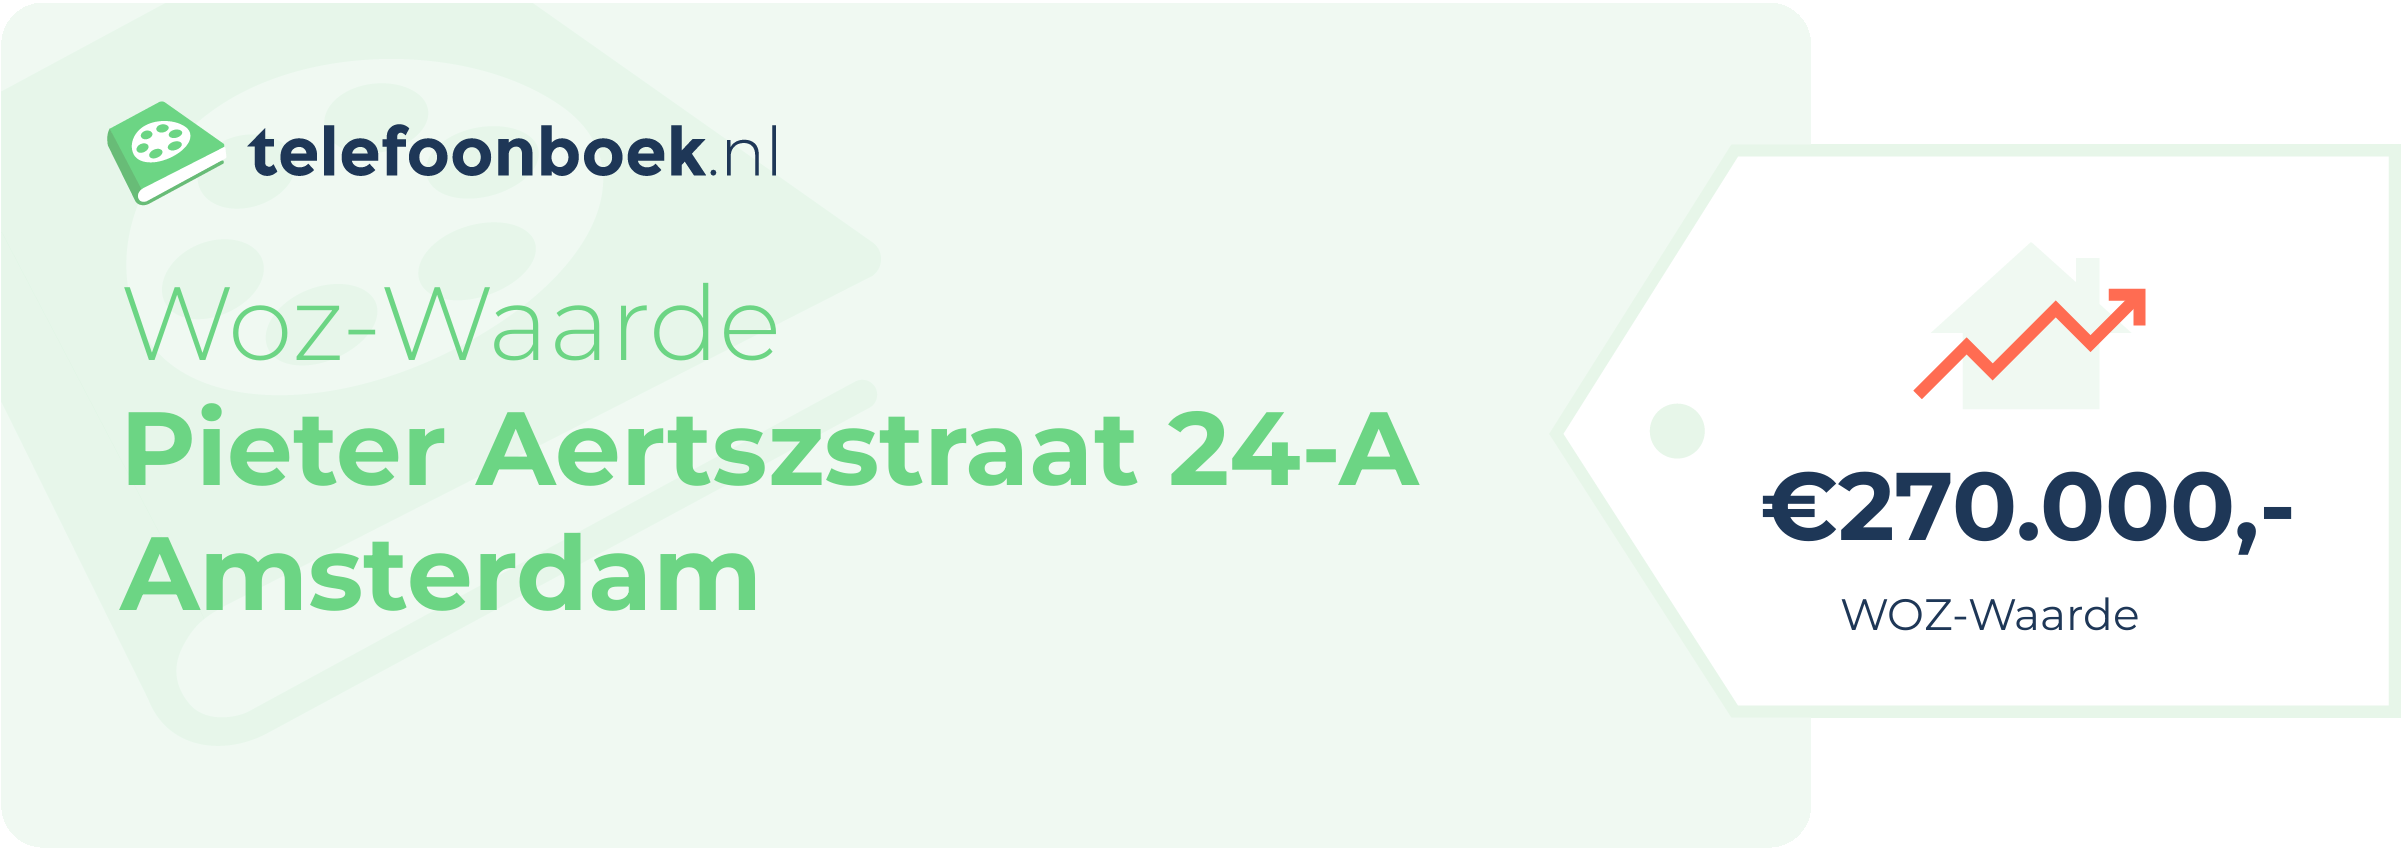 WOZ-waarde Pieter Aertszstraat 24-A Amsterdam